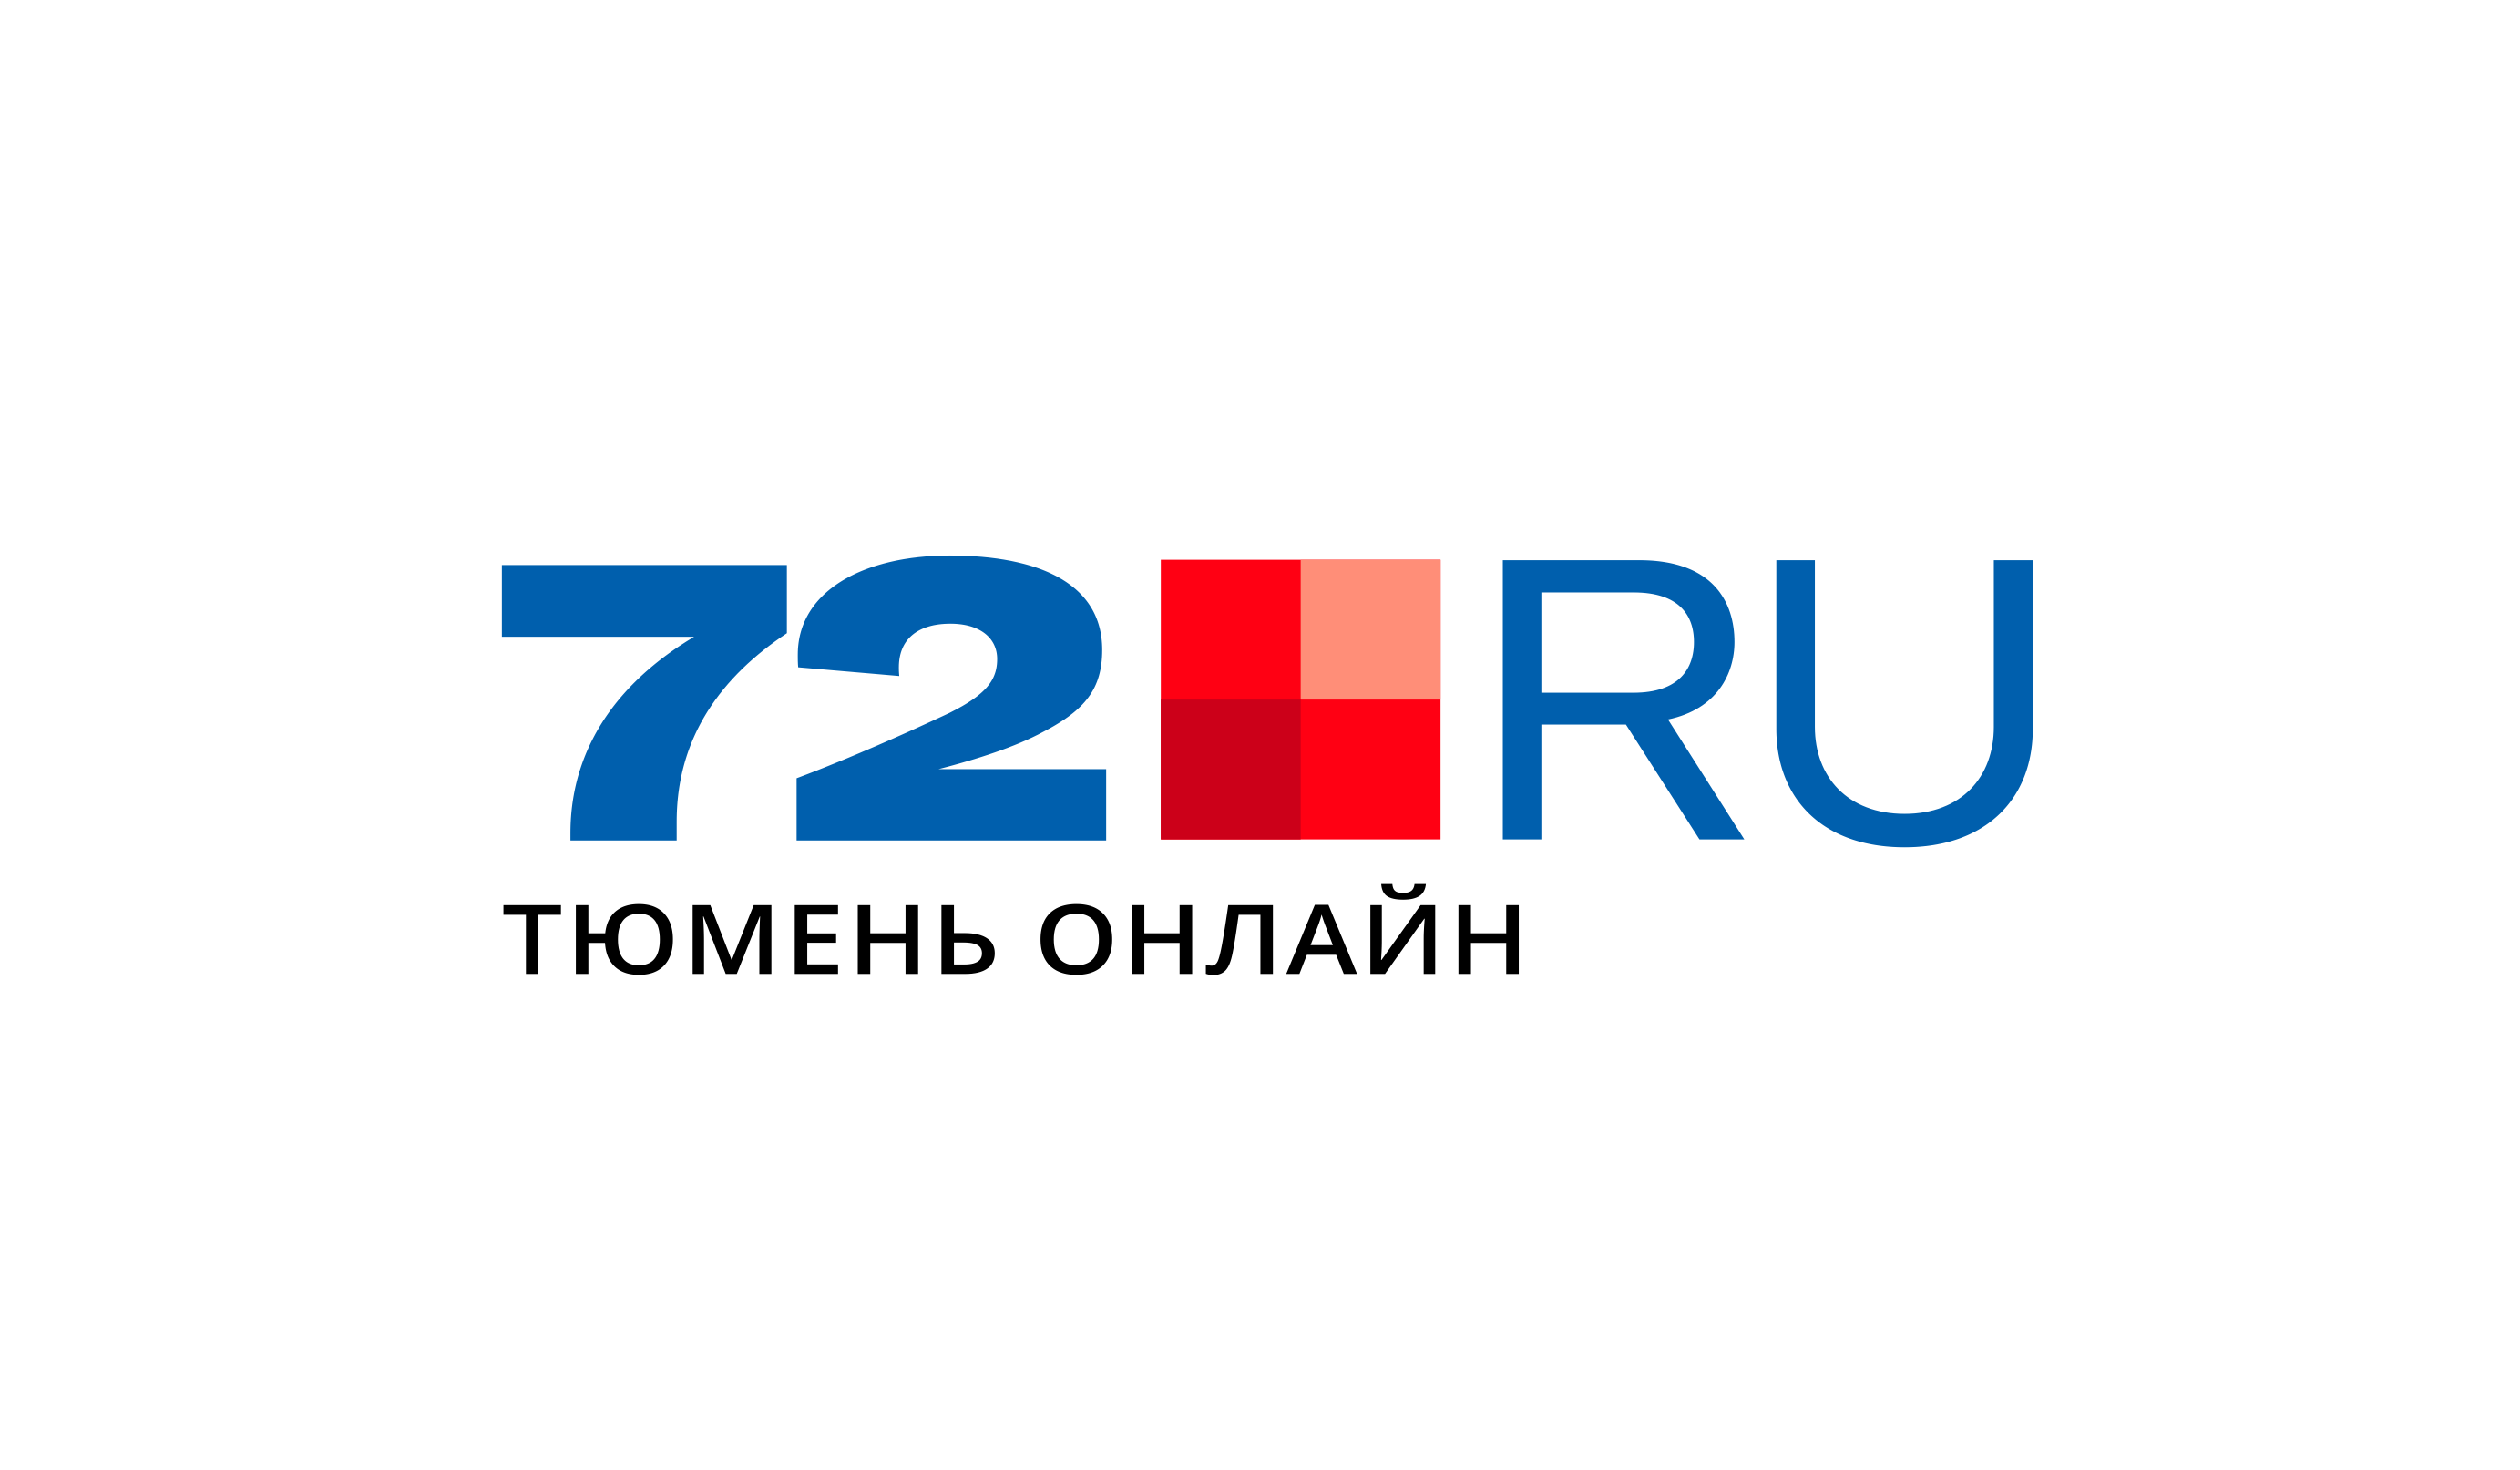 72.ru